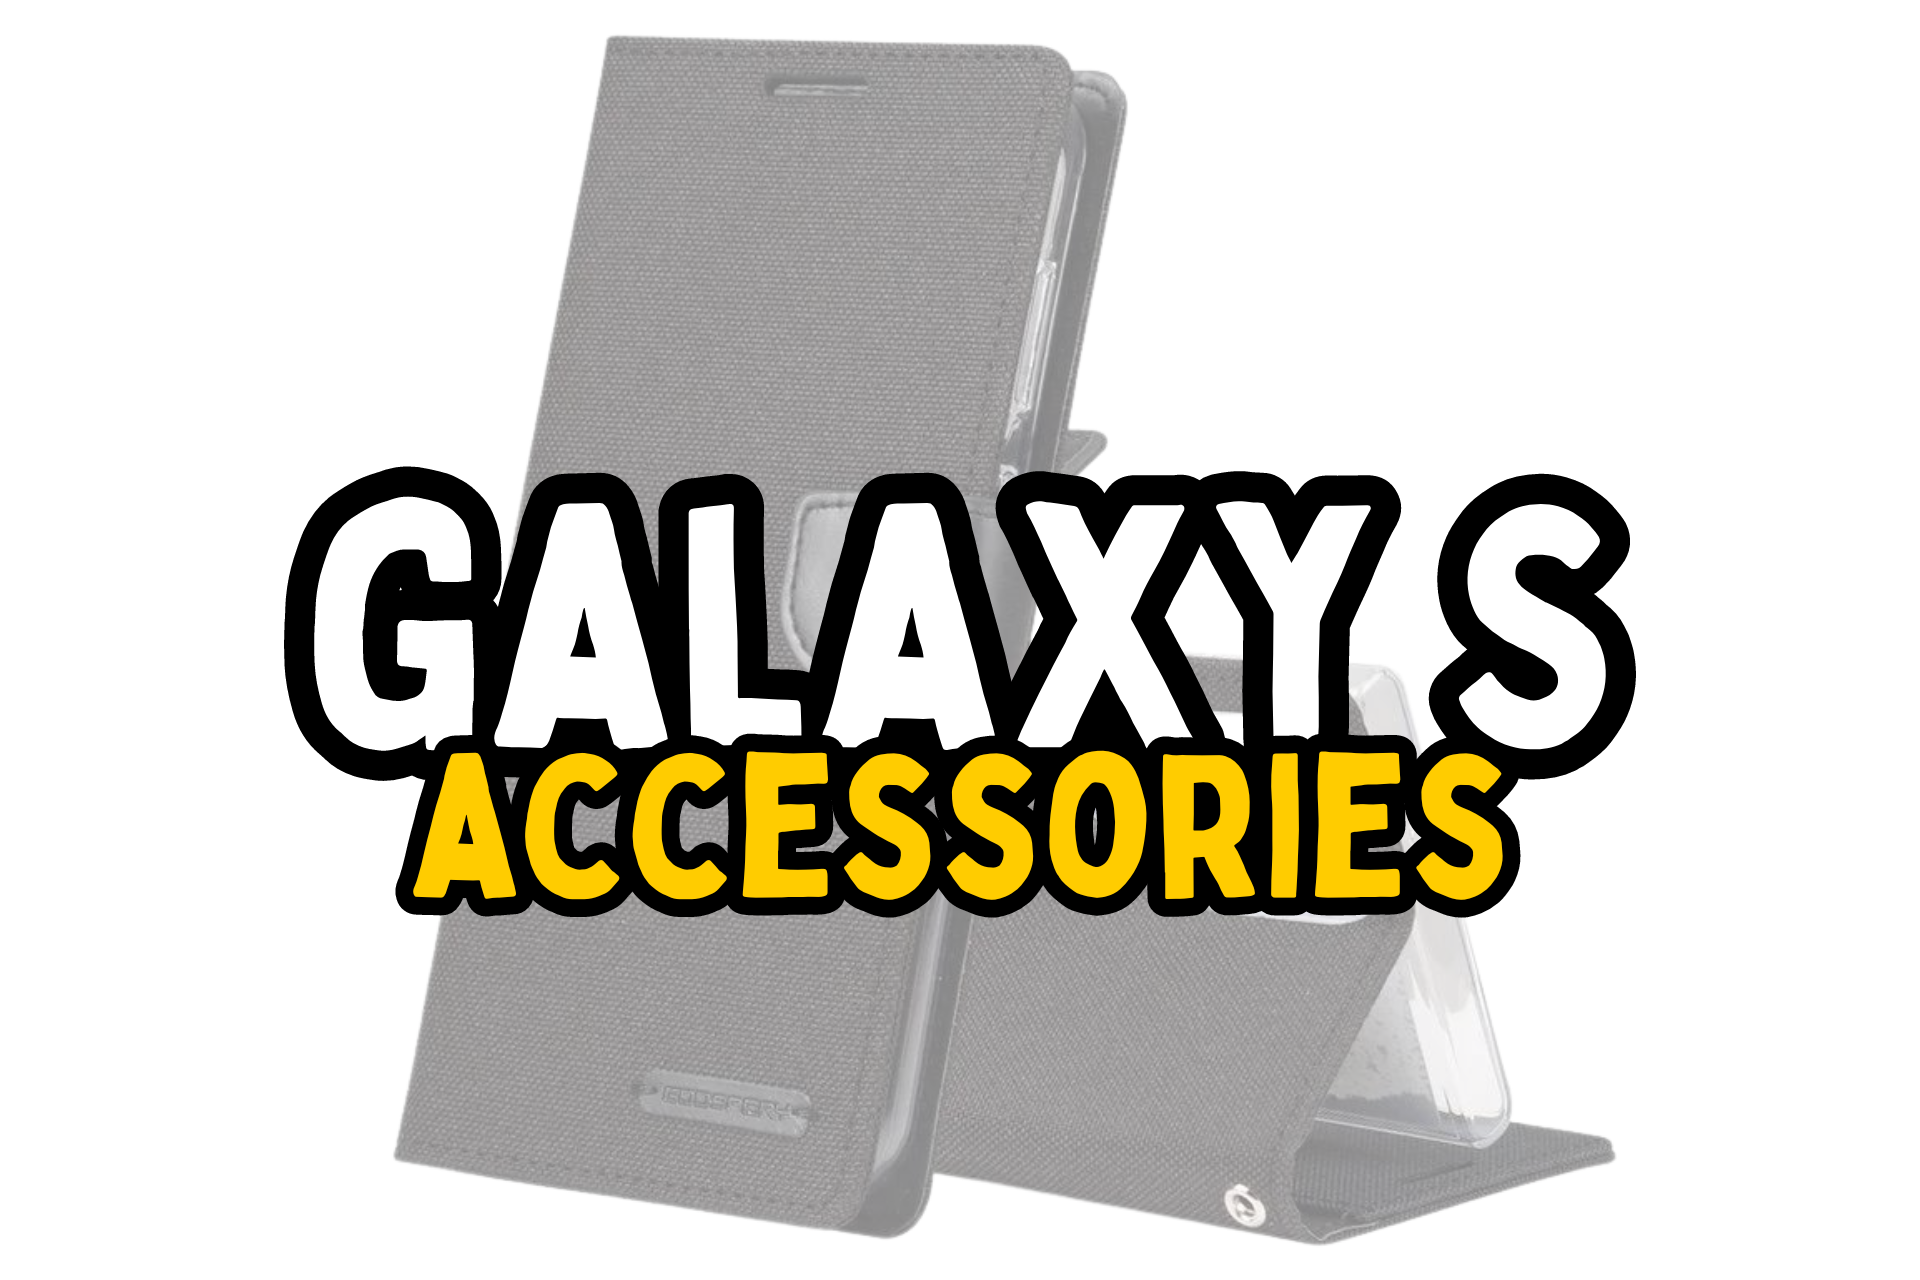 Samsung Galaxy S Accessories